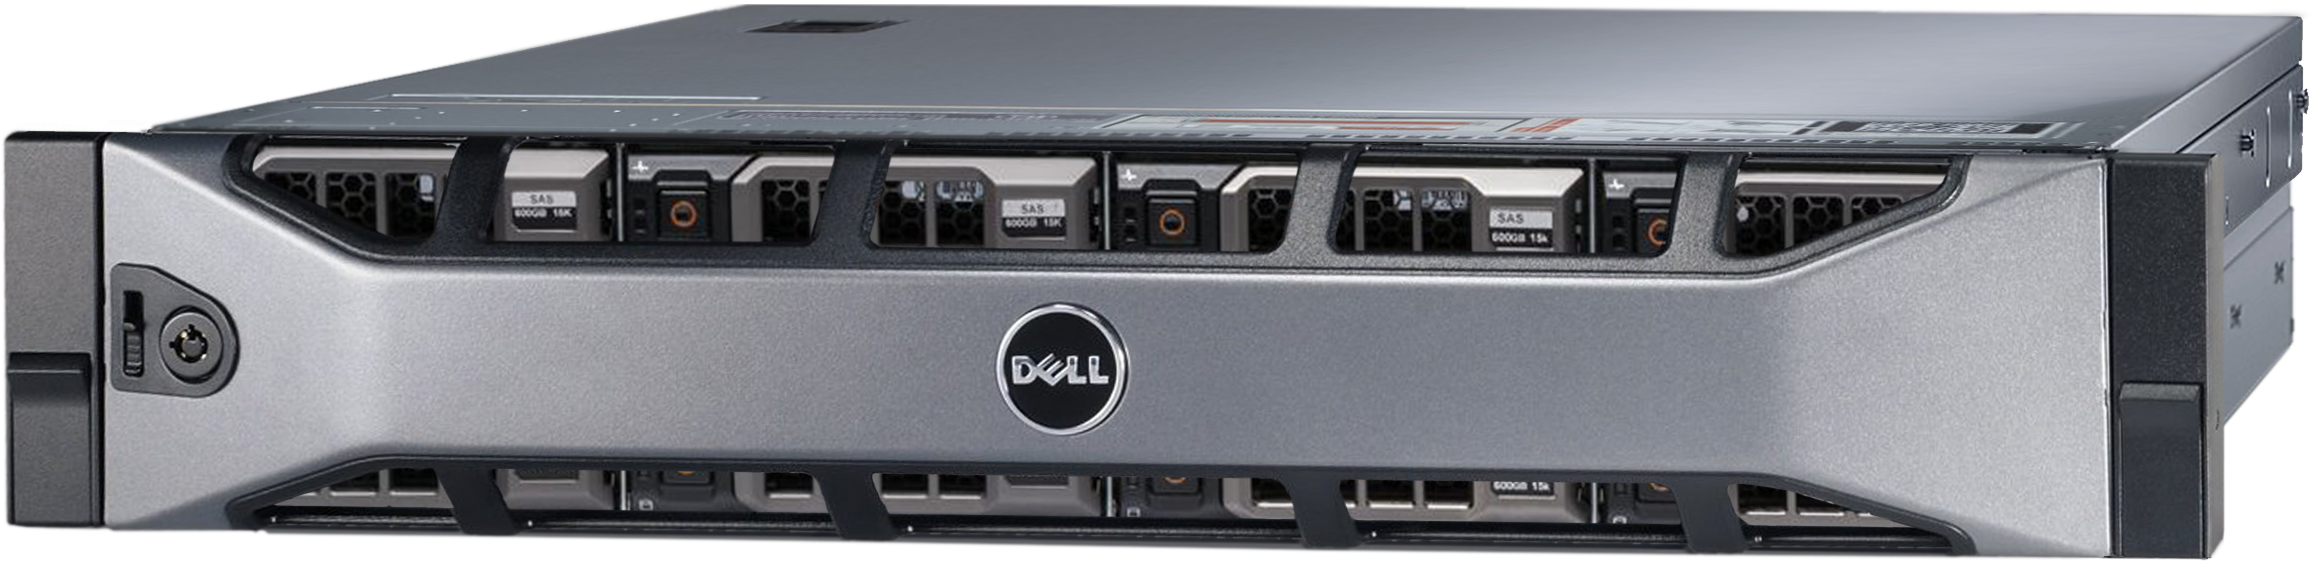 Аренда физического сервера DELL R720xd / 2 × E5-2620 v2 / 32 GB RAM / 2 x 240 GB SSD / 12 x 14 TB HDD / H310